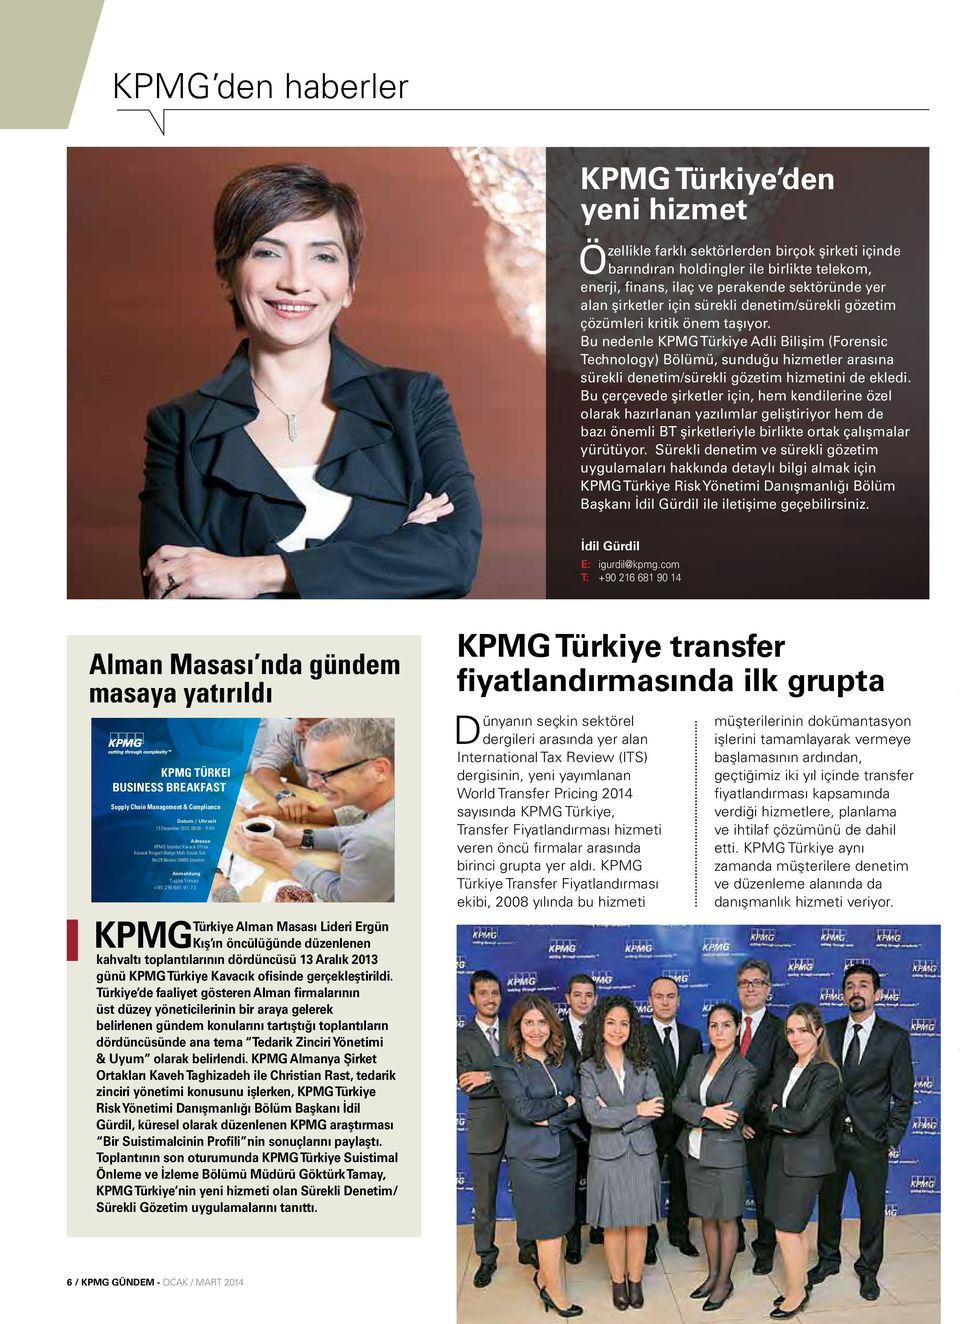 Bu nedenle KPMG Türkiye Adli Bilişim (Forensic Technology) Bölümü, sunduğu hizmetler arasına sürekli denetim/sürekli gözetim hizmetini de ekledi.